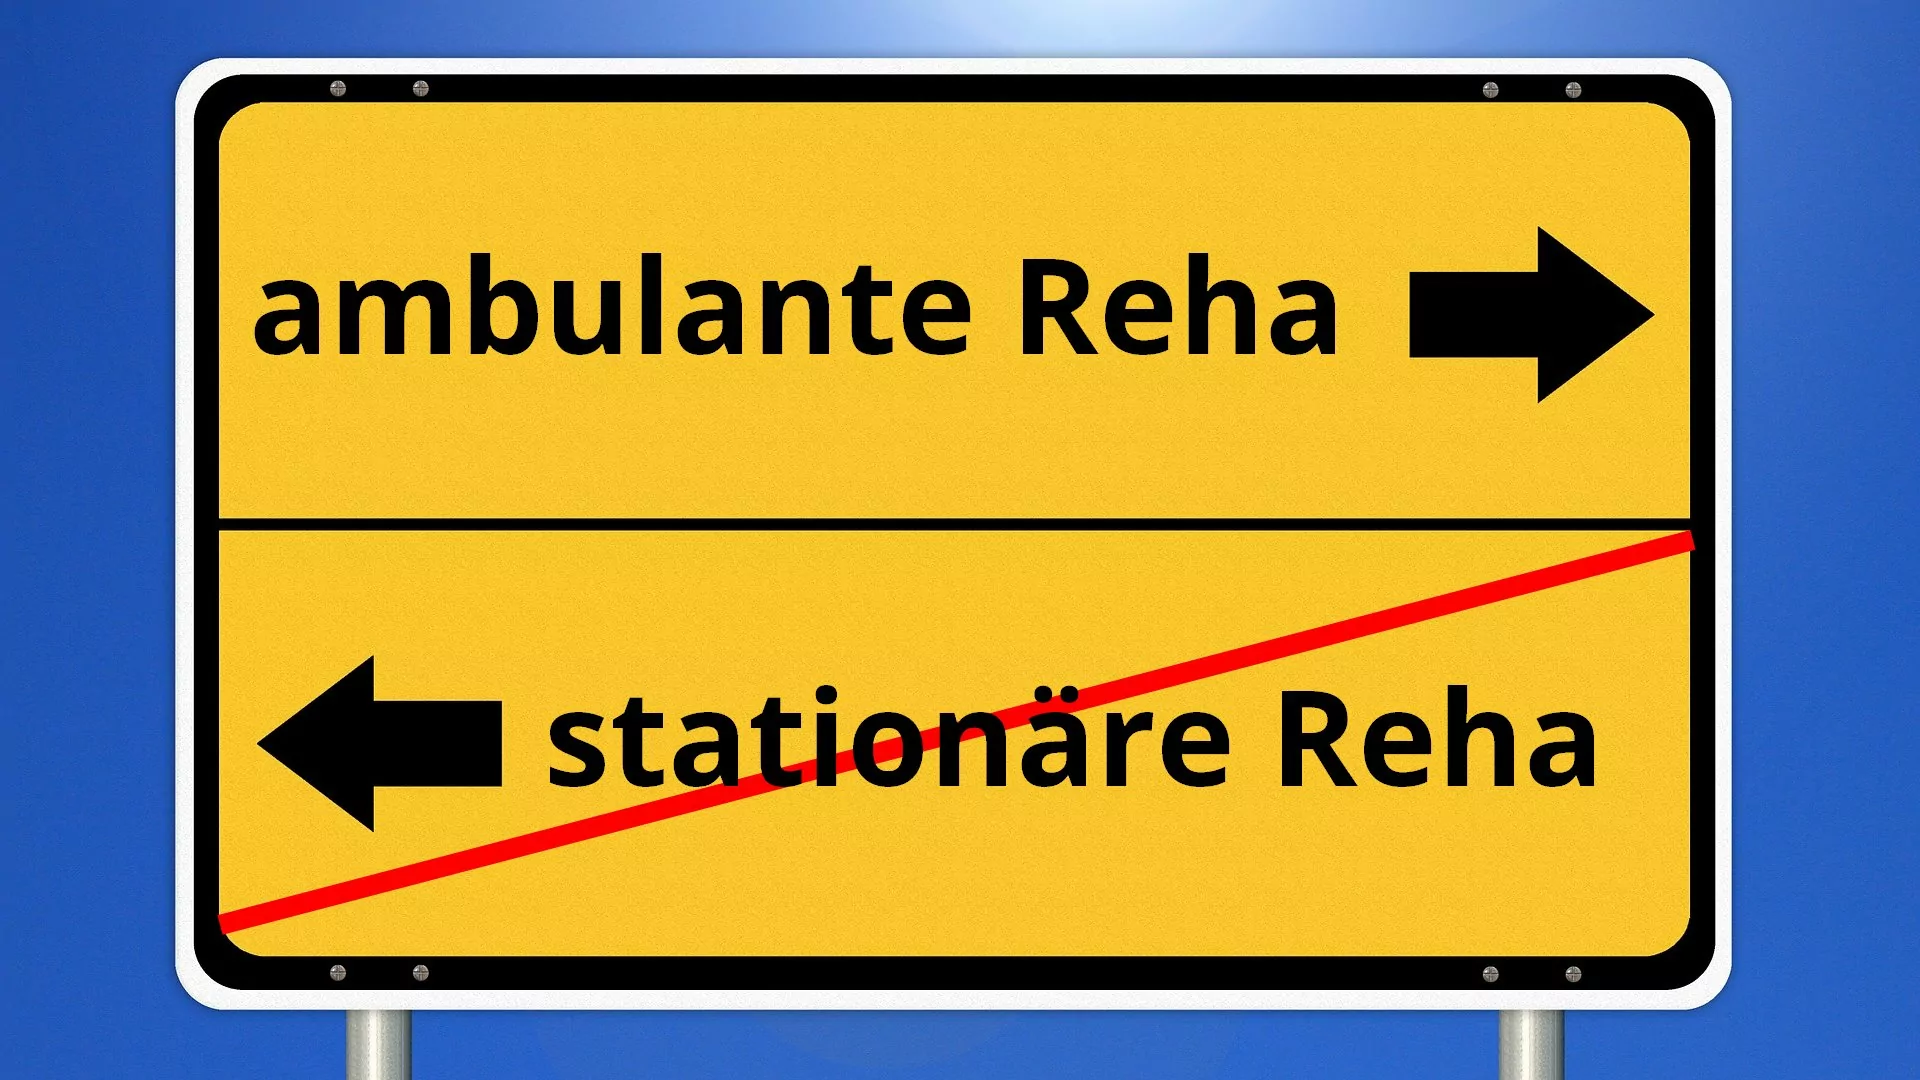 Die Reha wurde abgelehnt, weil die Krankenkasse / DRV die ambulante Rehabilitation einer stationären vorzieht.